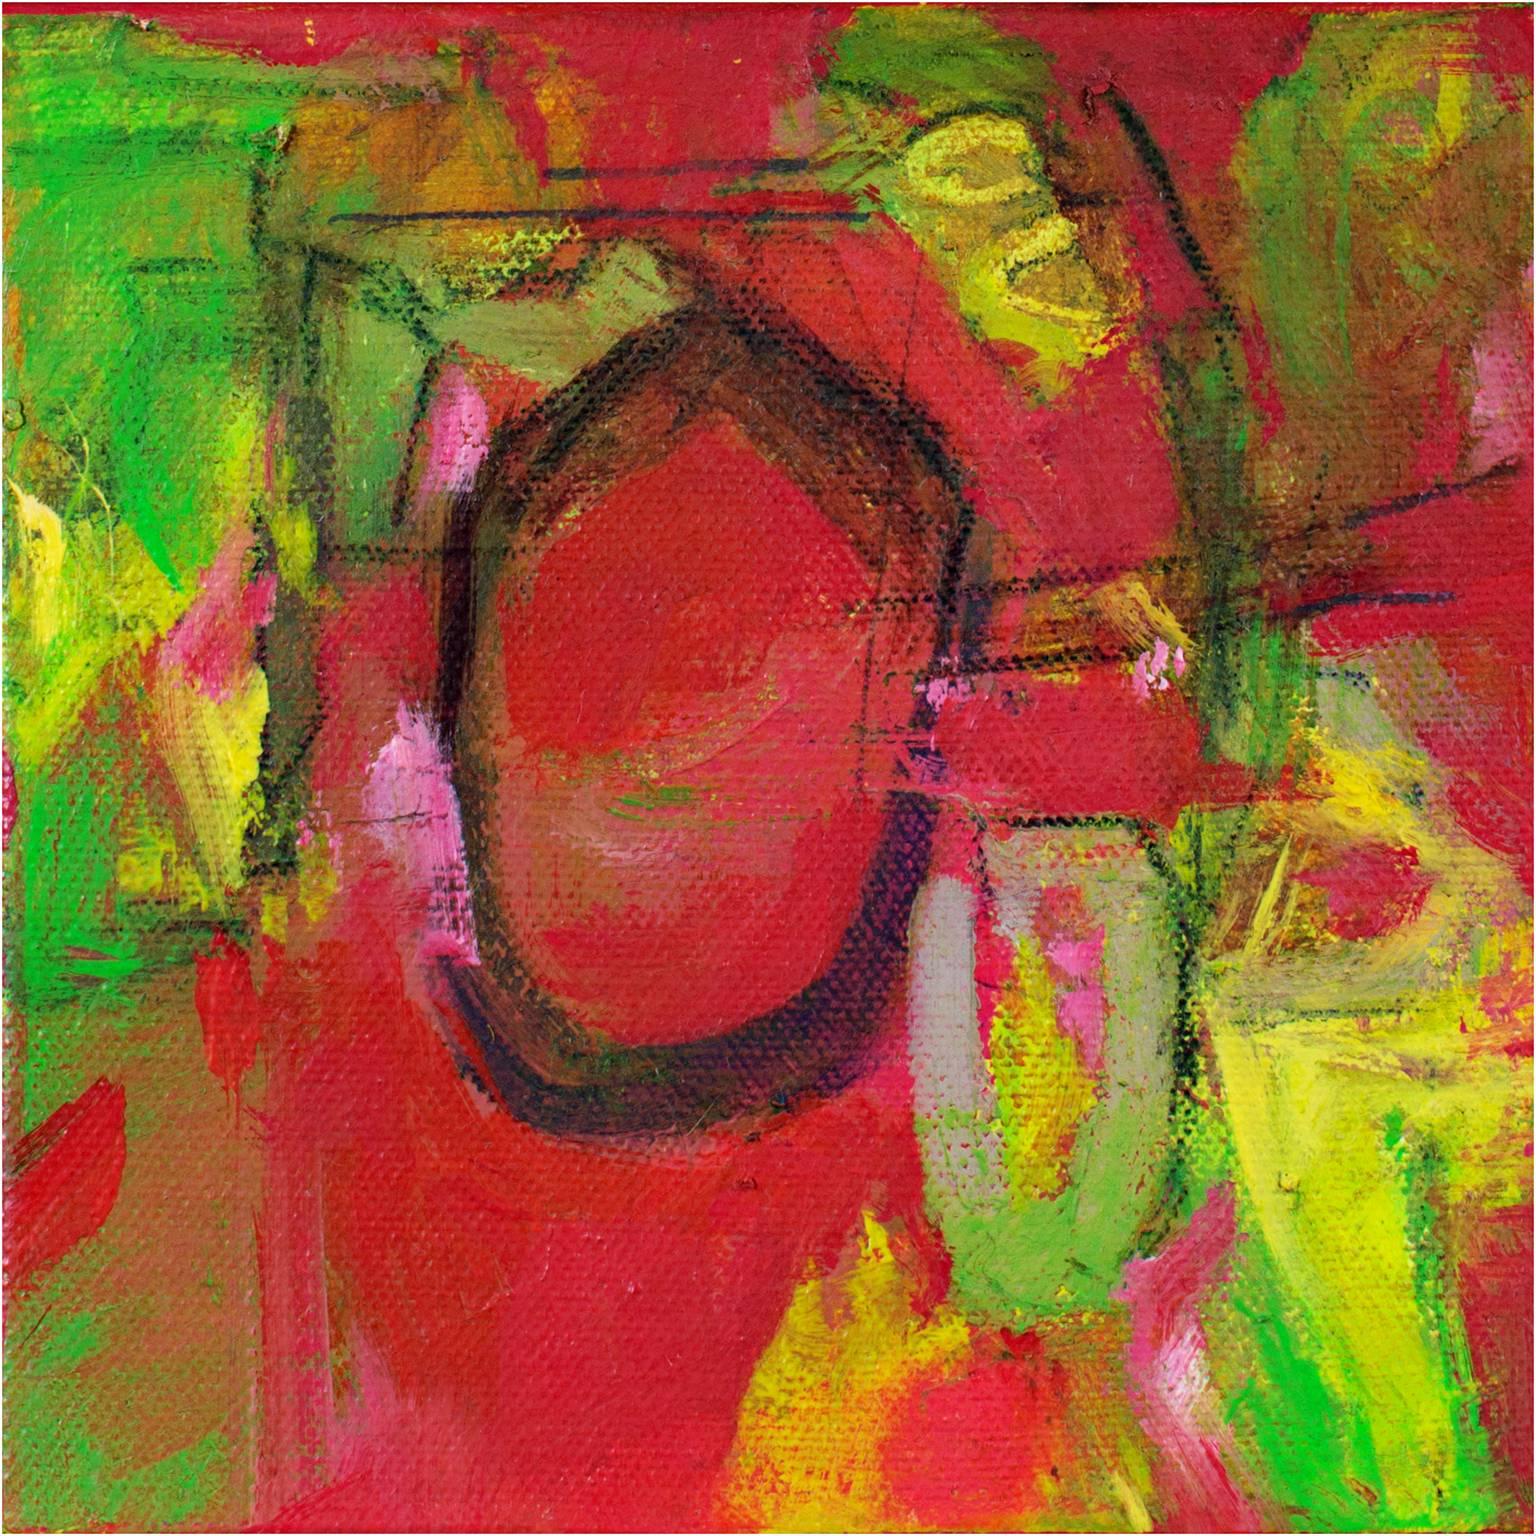 "Jam Session III" est une peinture à l'huile originale sur toile d'Alayna Rose. Cette peinture présente une variété de marques abstraites en vert et jaune vif sur un fond rose vif. La galerie David Barnett met en vente les deux autres tableaux de ce